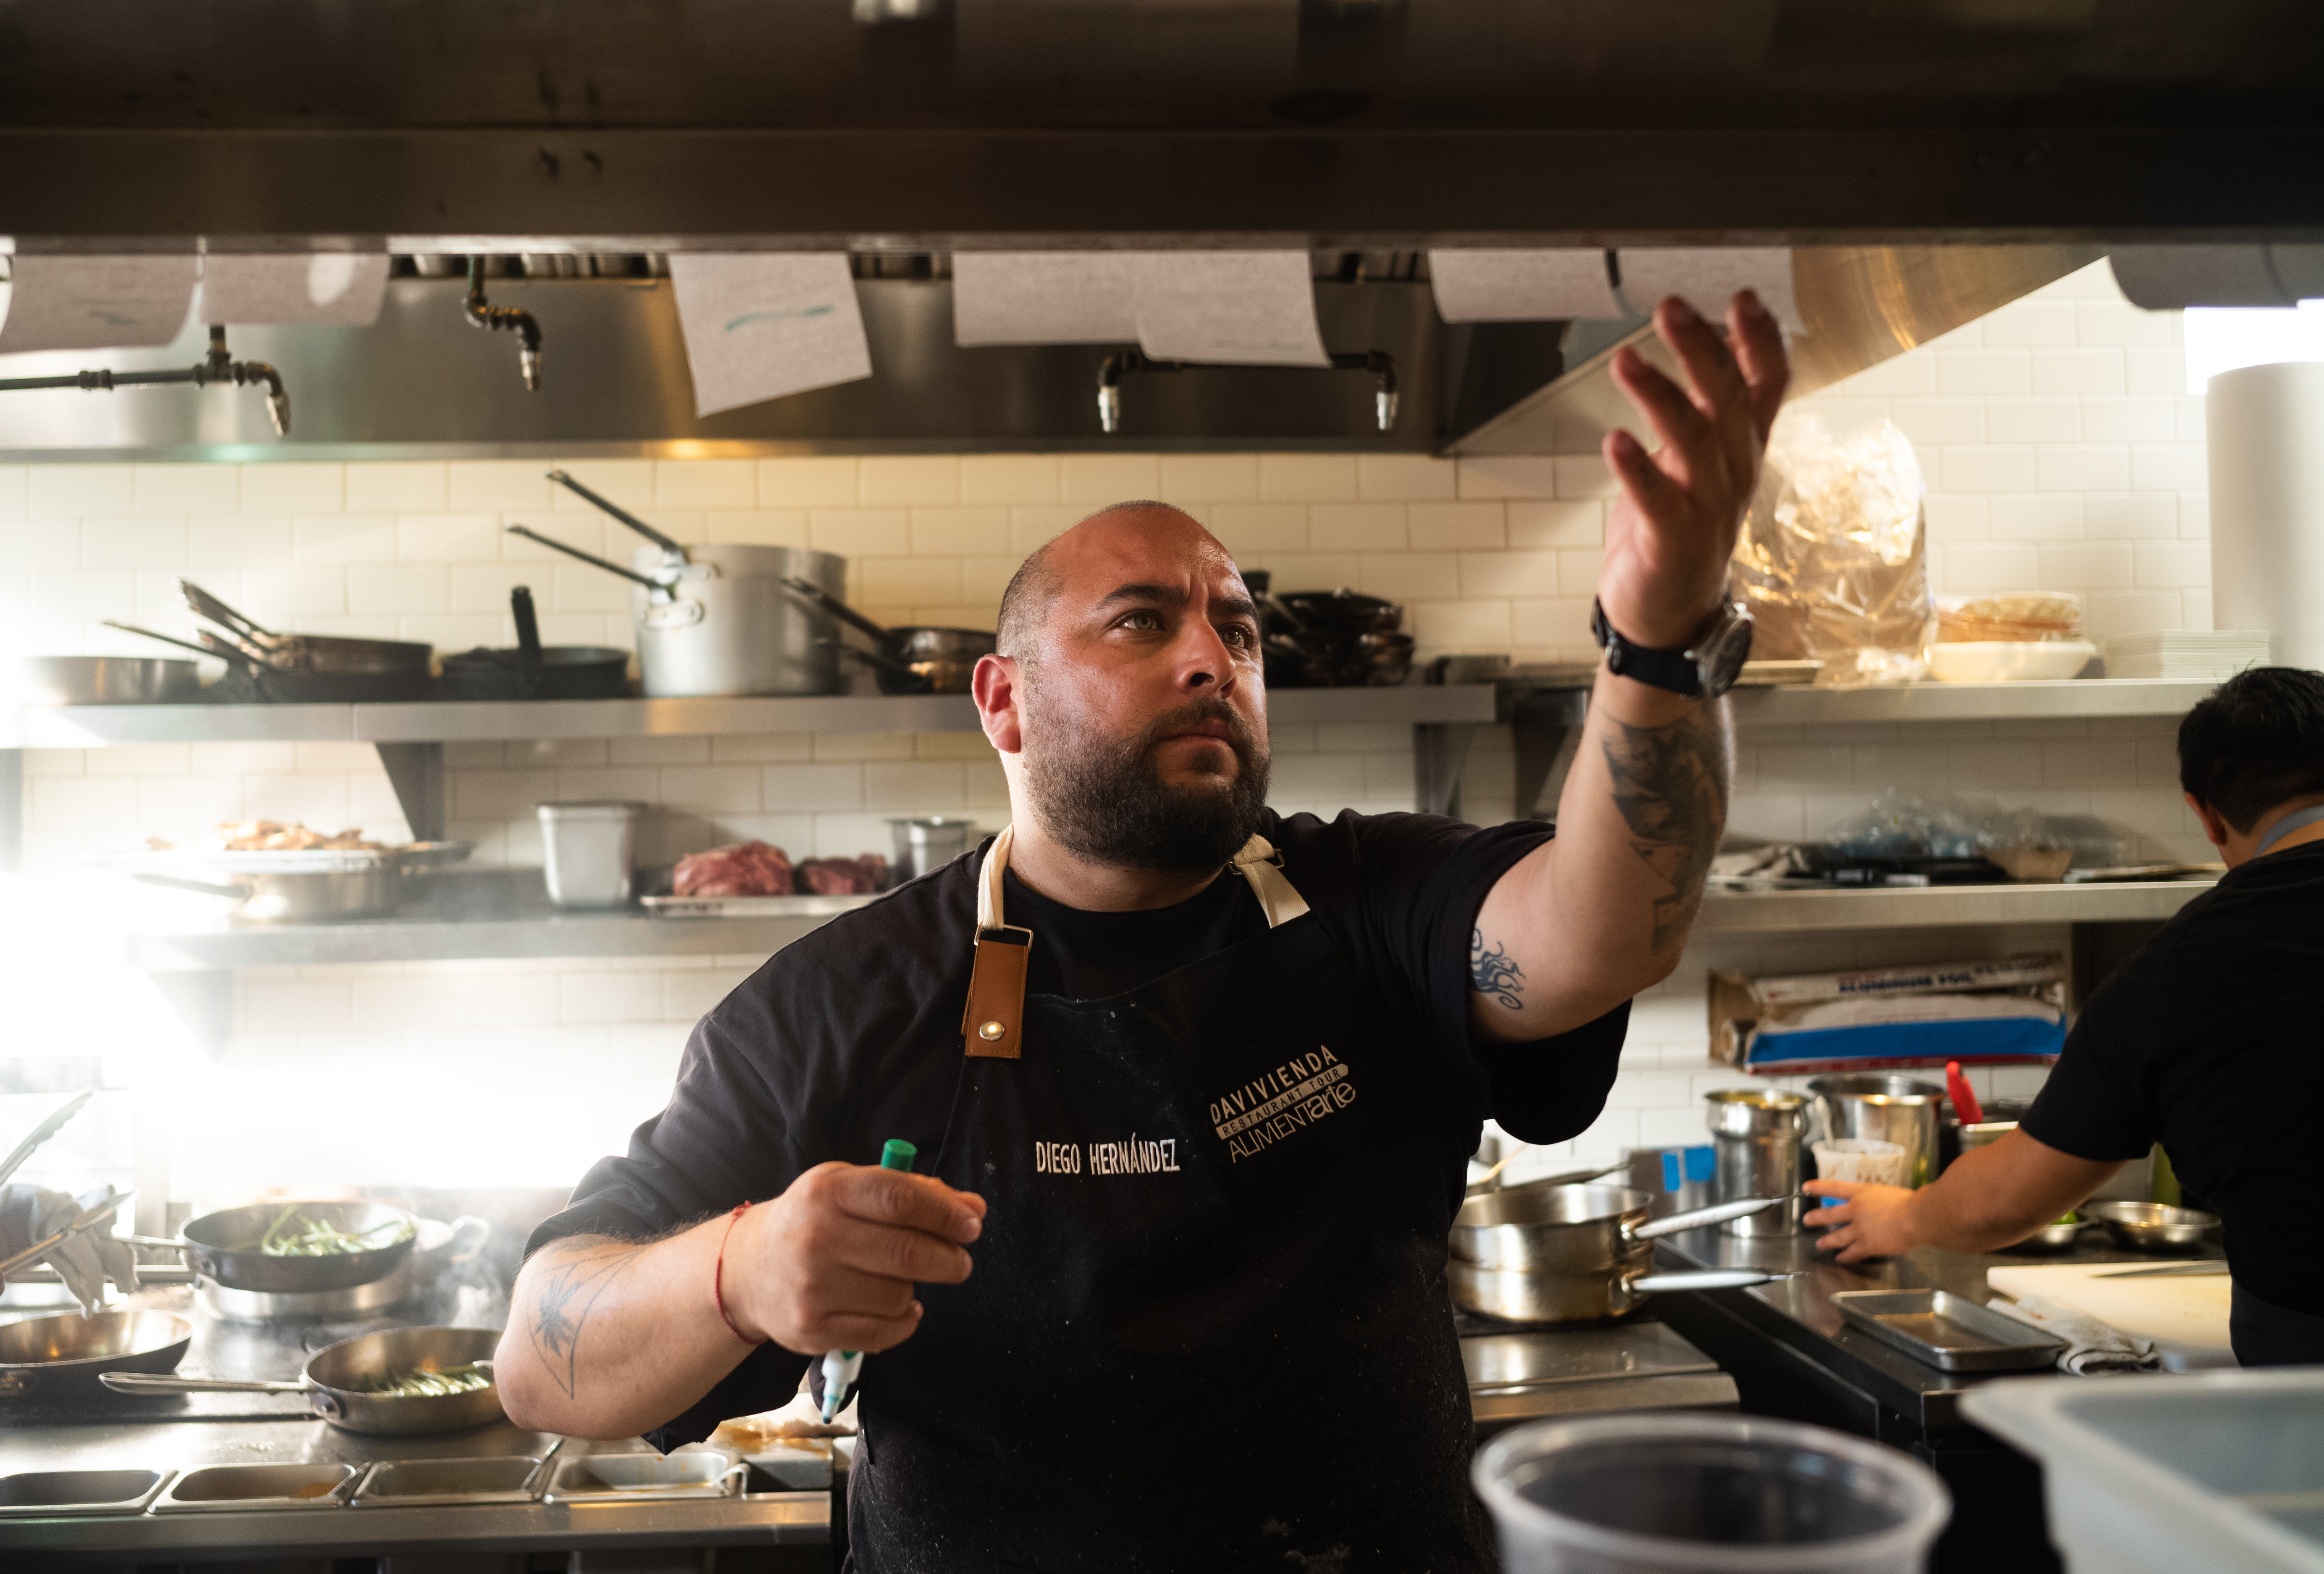 Chef wearing dark apron checks orders inside a restaurant kitchen.